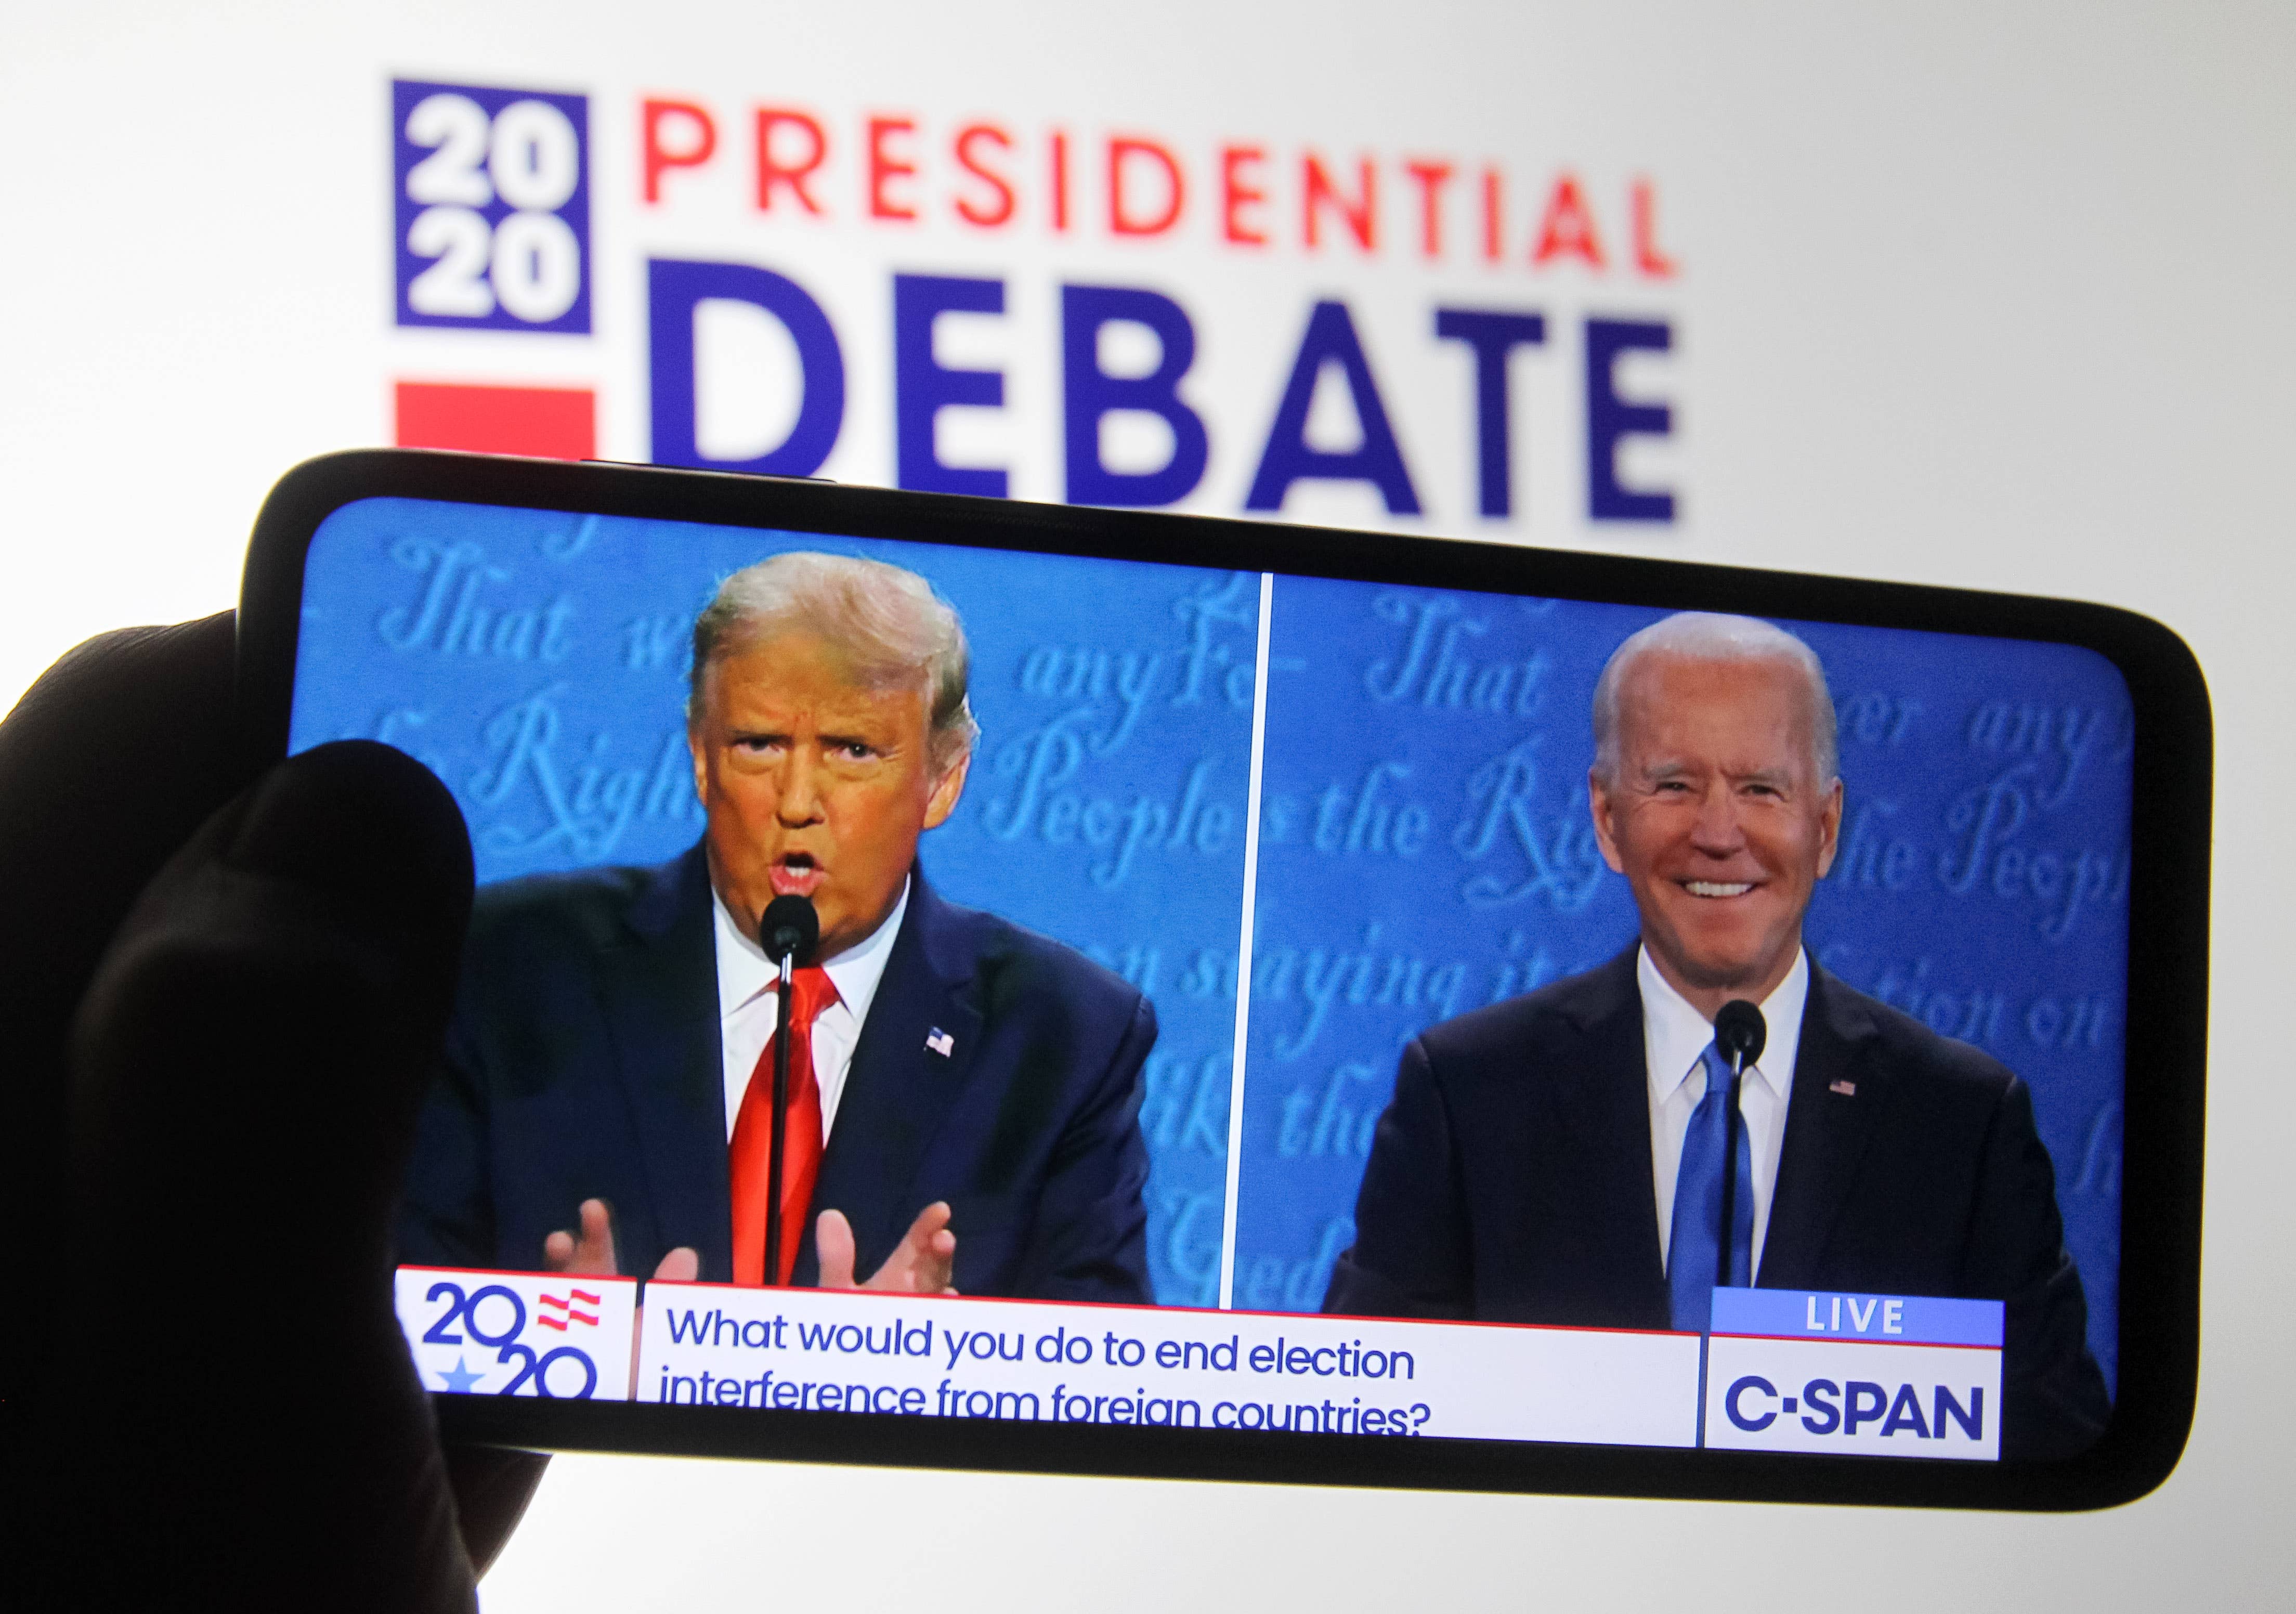 Final 2020 Presidential Debate